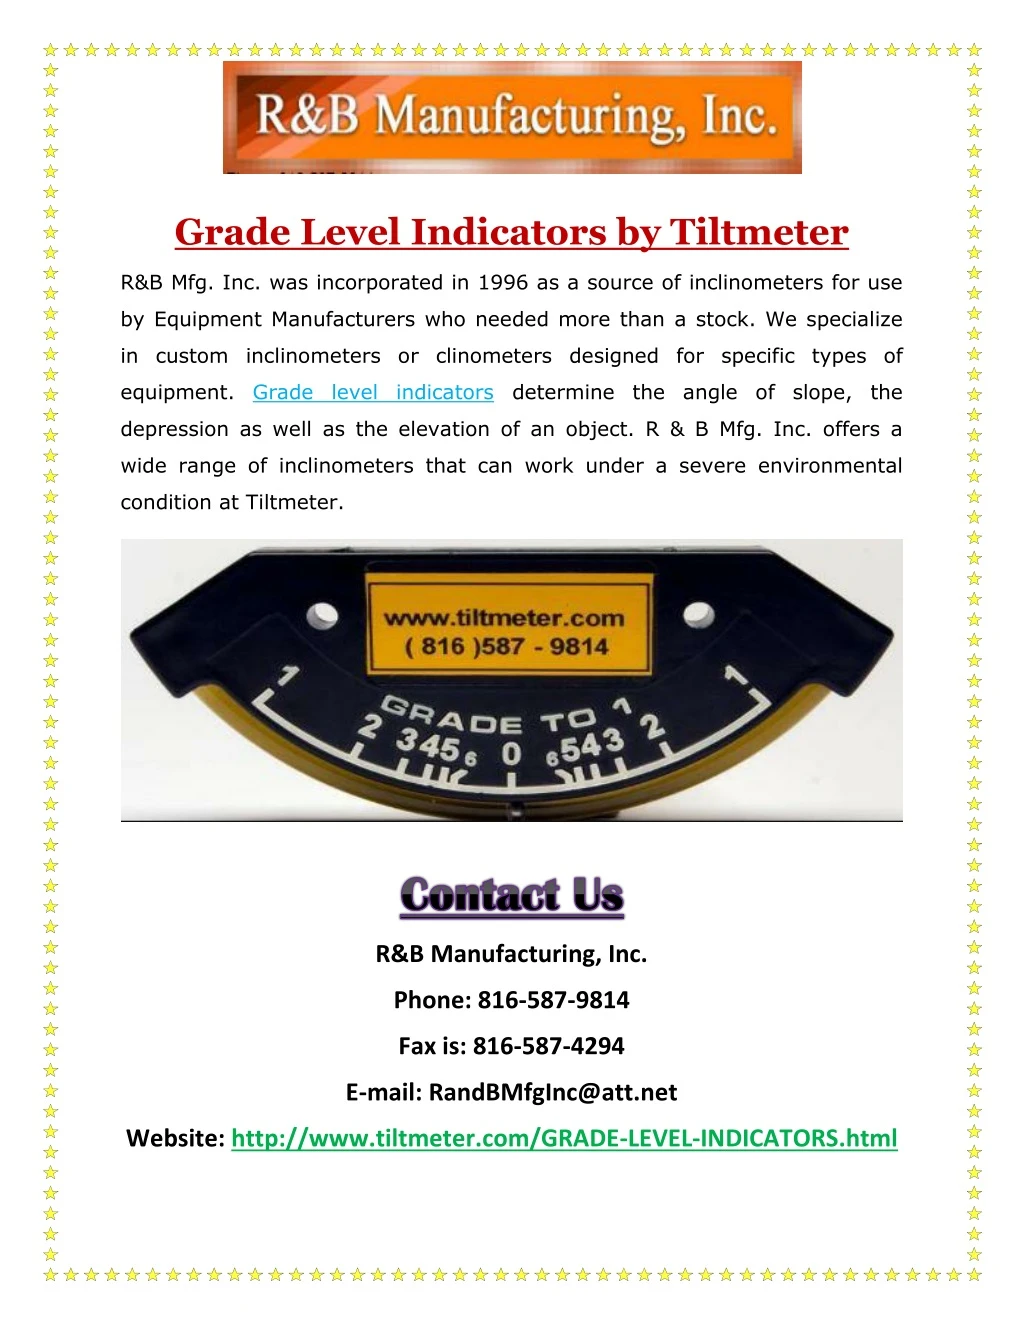 grade level indicators by tiltmeter